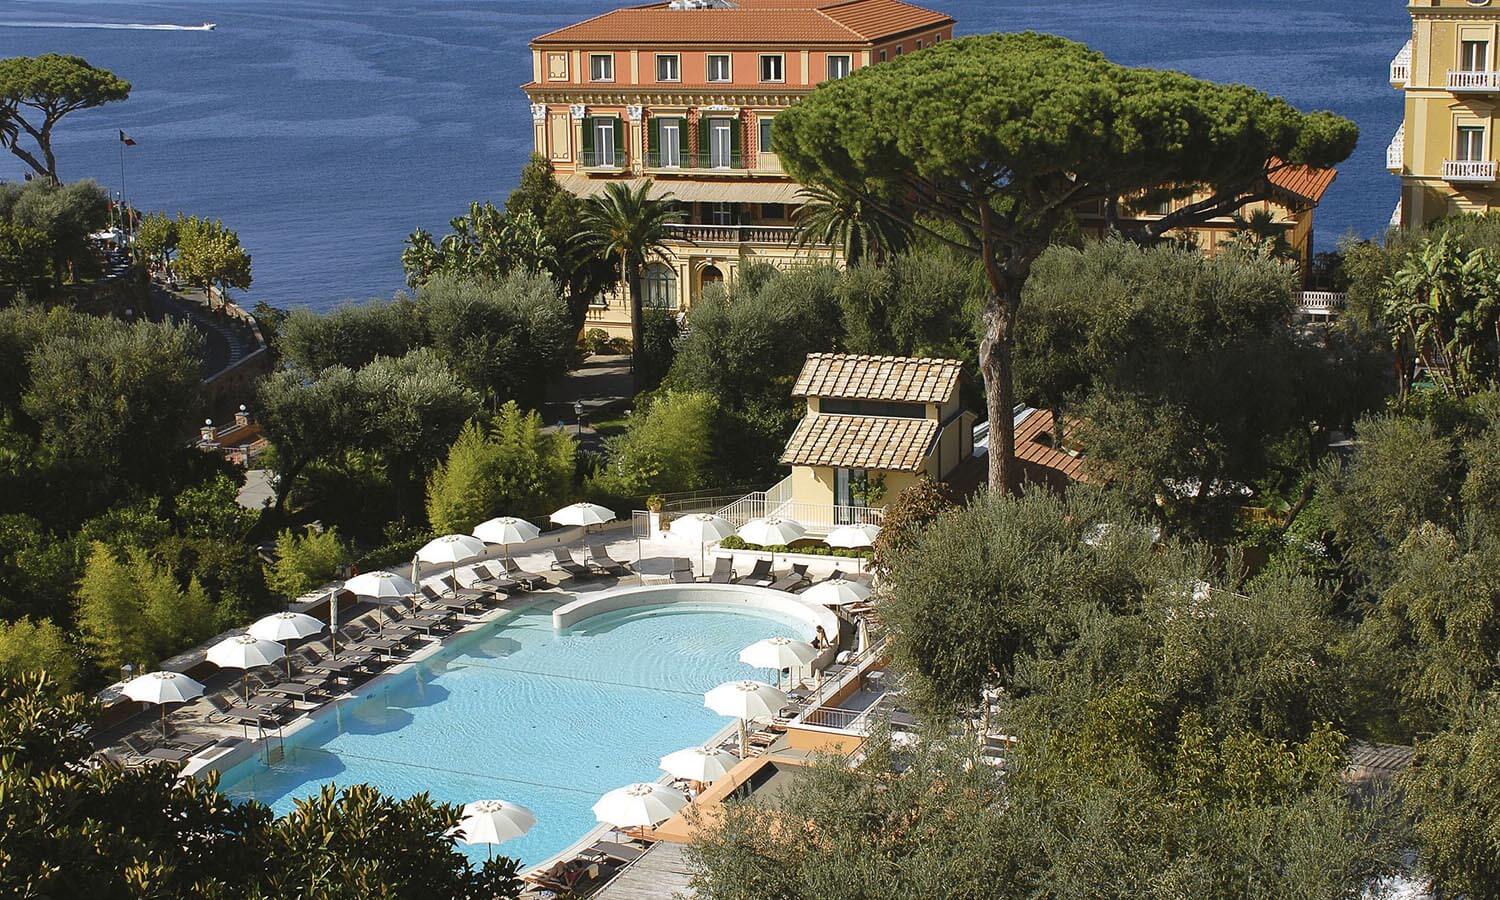 هتل Excelsior Vittoria در ایتالیا بهترین هتل های اروپا